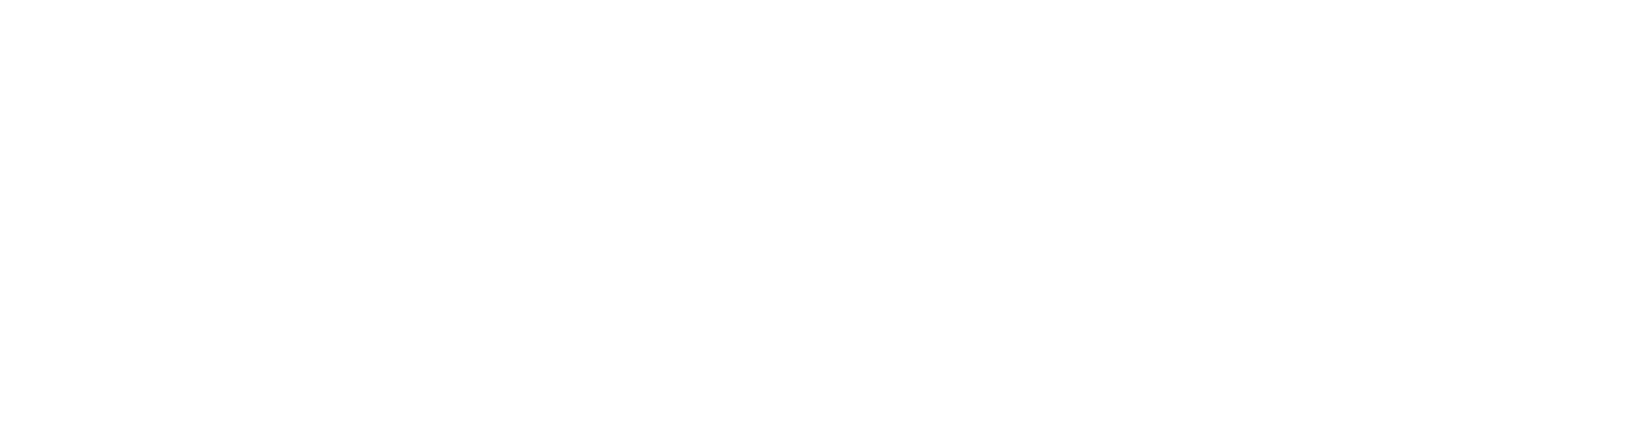 Minerva Neurosciences
 logo large for dark backgrounds (transparent PNG)